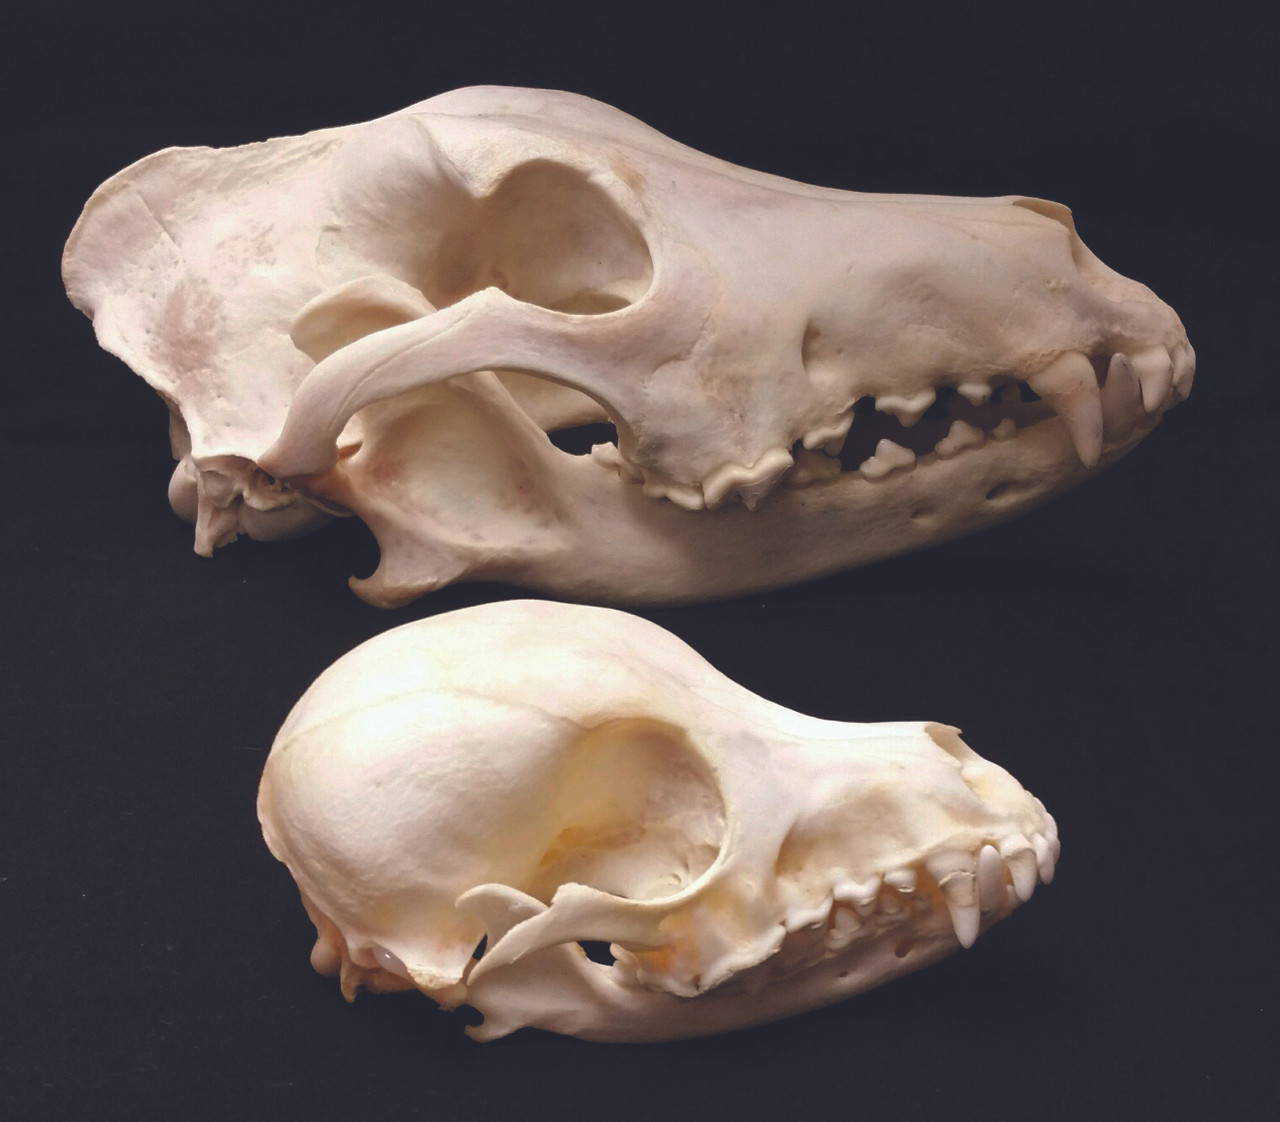 puppy skull teeth